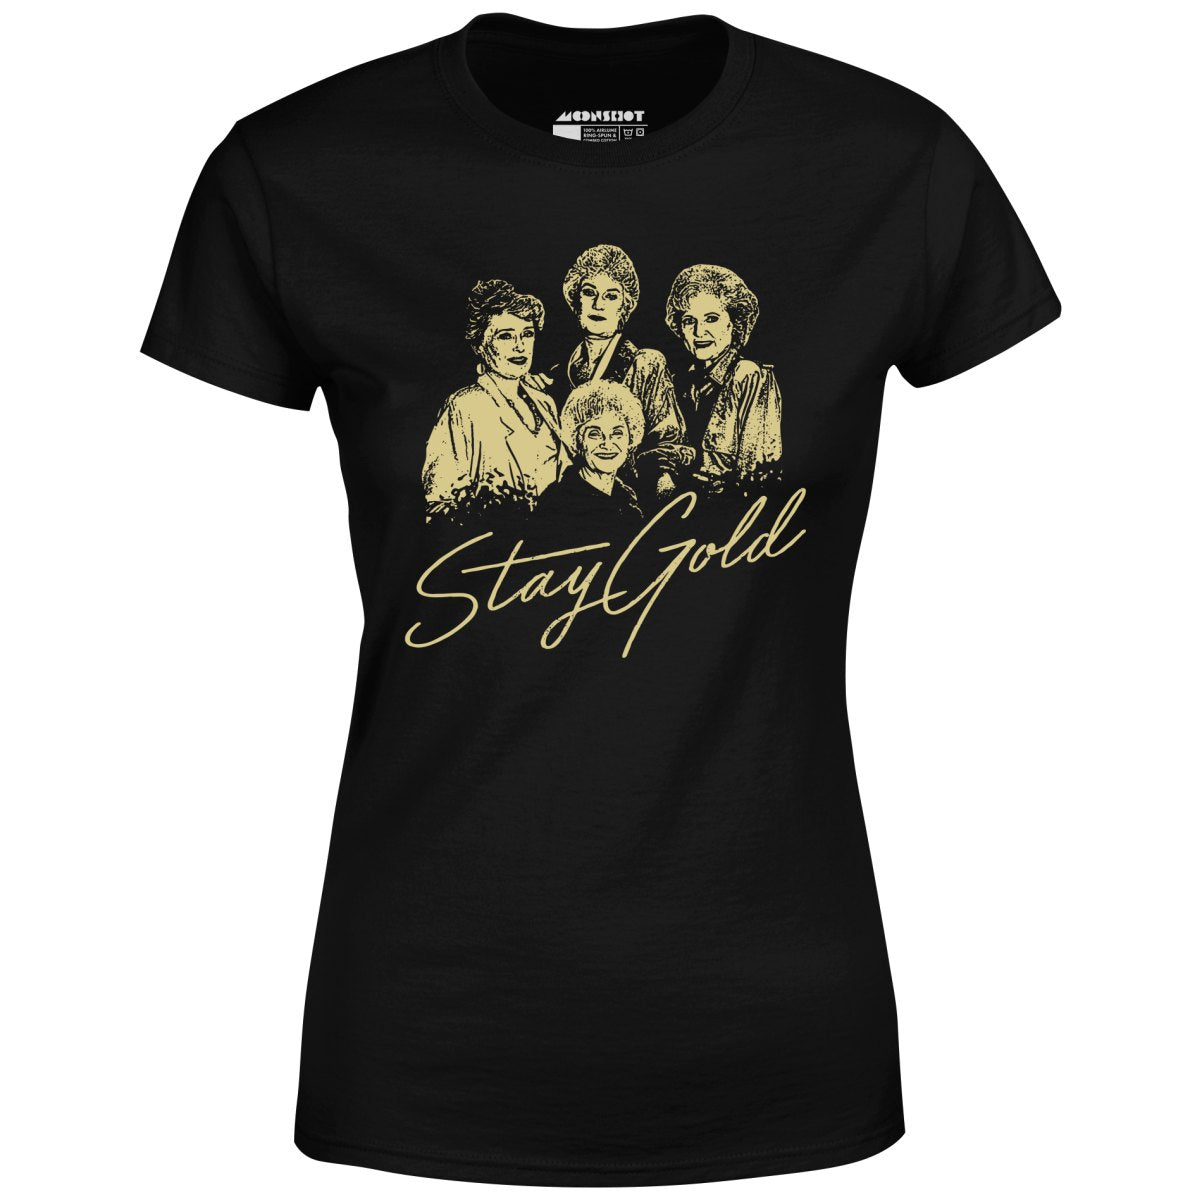 Stay Gold - Golden Girls - Women's T-Shirt